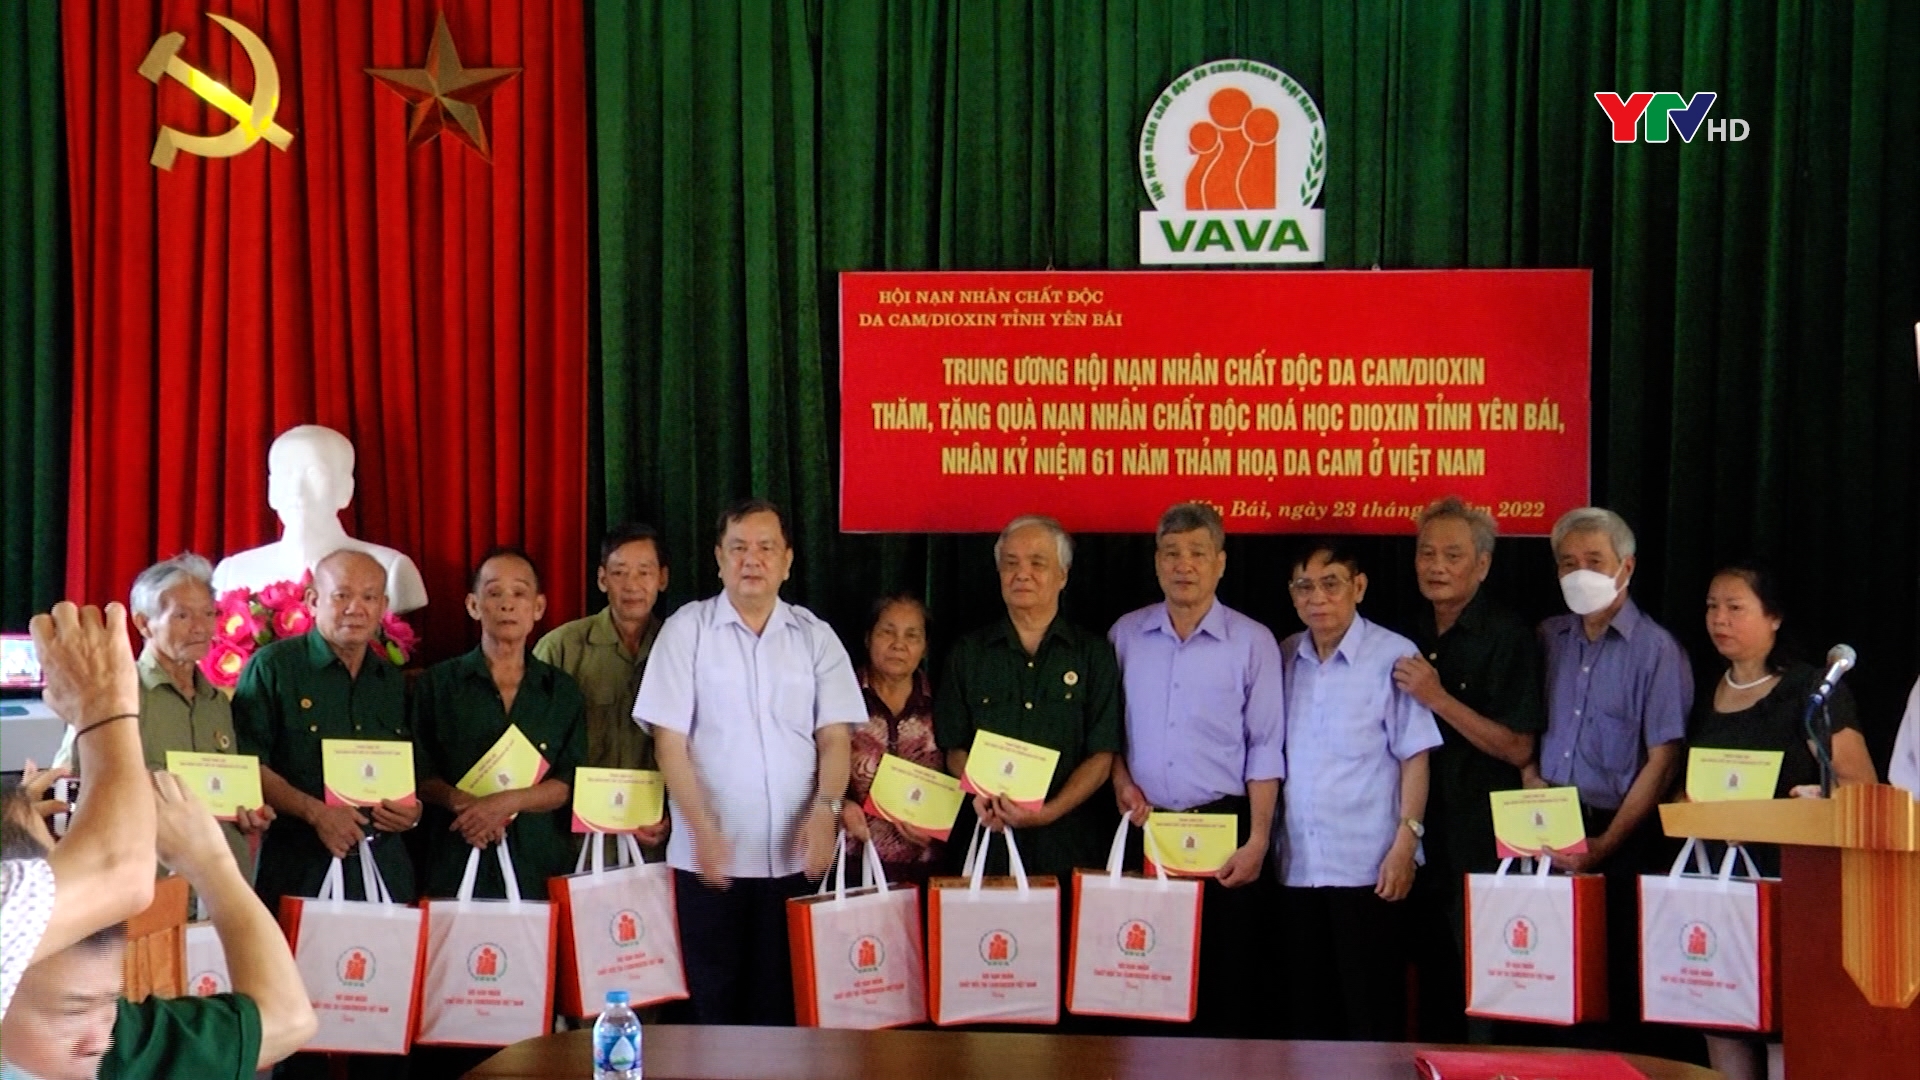 Trung ương Hội nạn nhân chất độc da cam/đioxin Việt Nam tặng quà tại Yên Bái